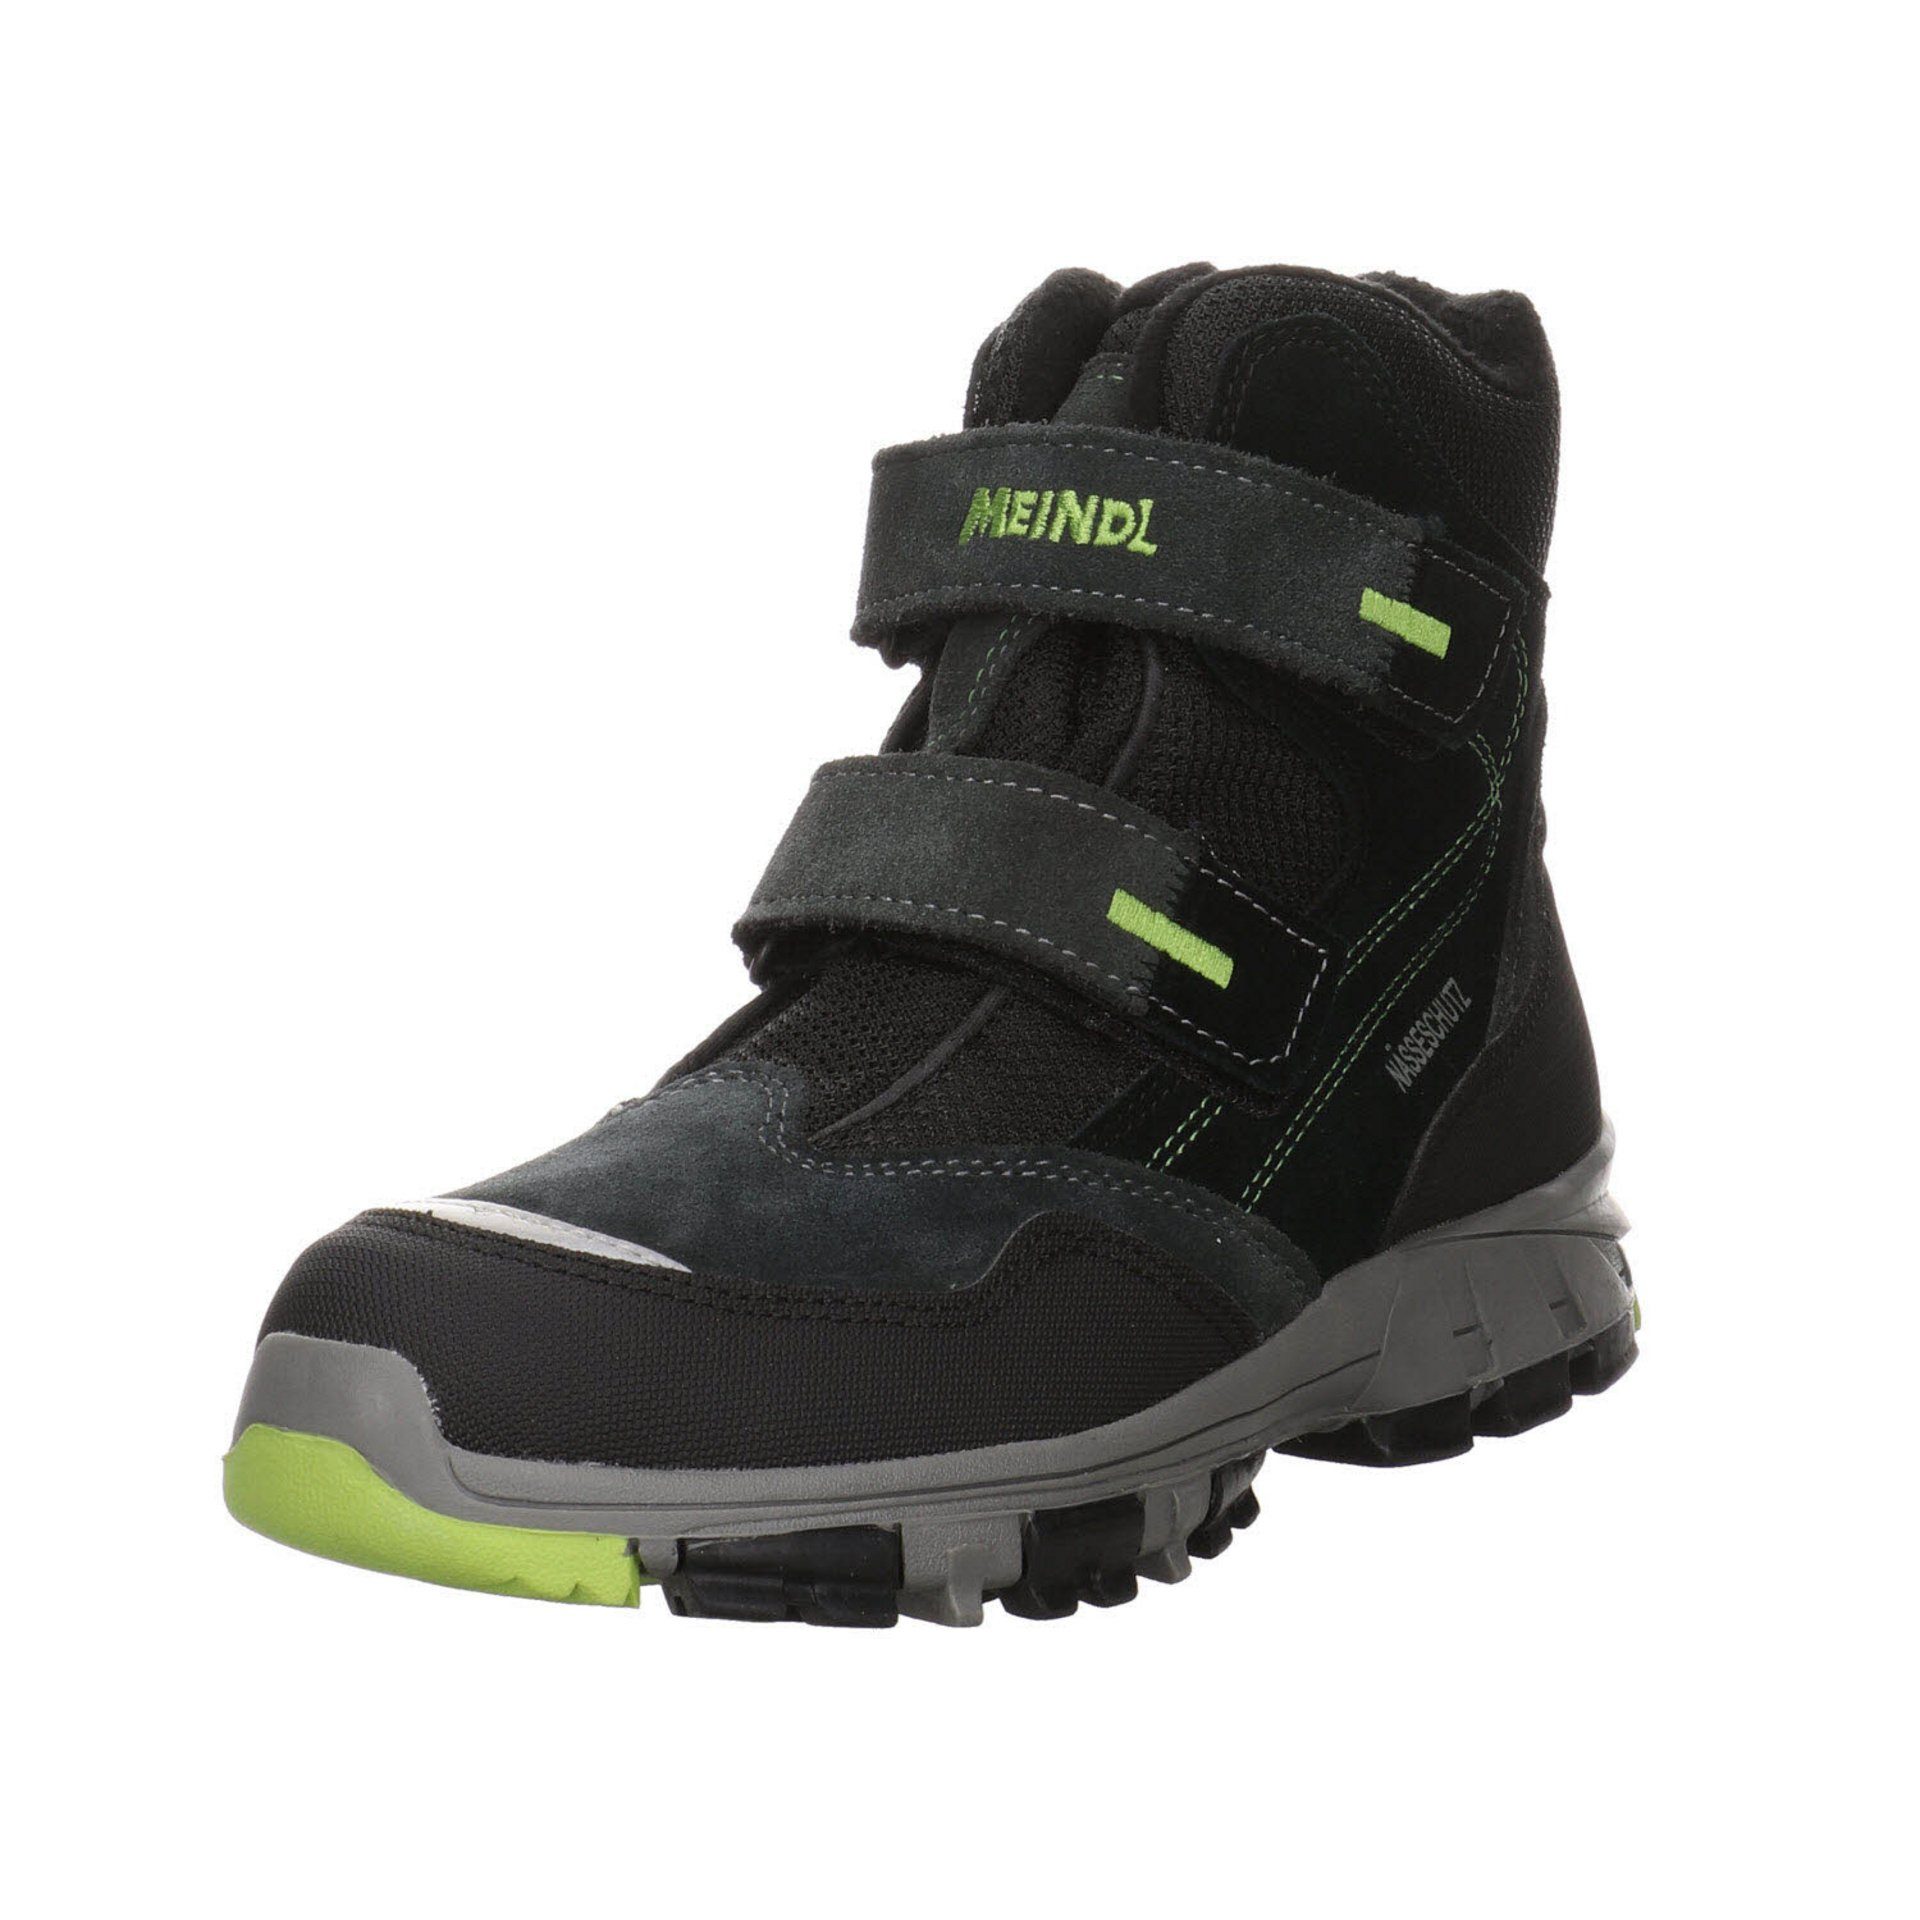 Meindl Jungen Stiefel Schuhe Polar Fox Junior Boots Stiefel Leder-/Textilkombination | Stiefel